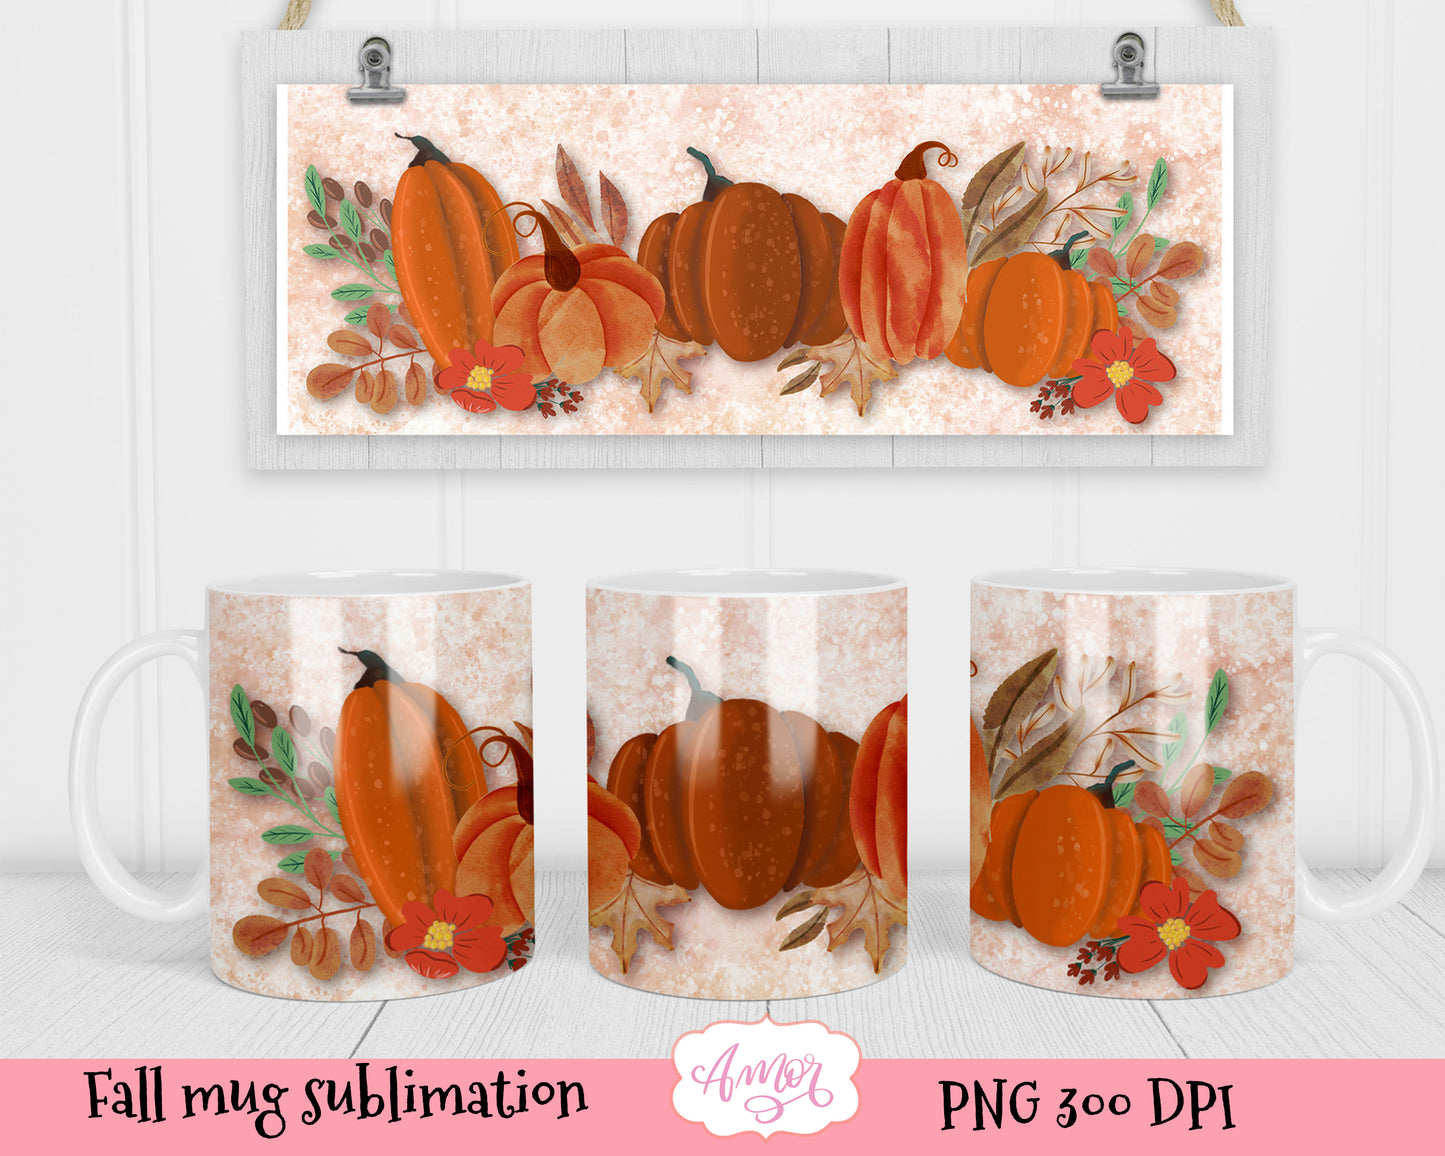 Fall Pumpkins 11oz mug sublimation design